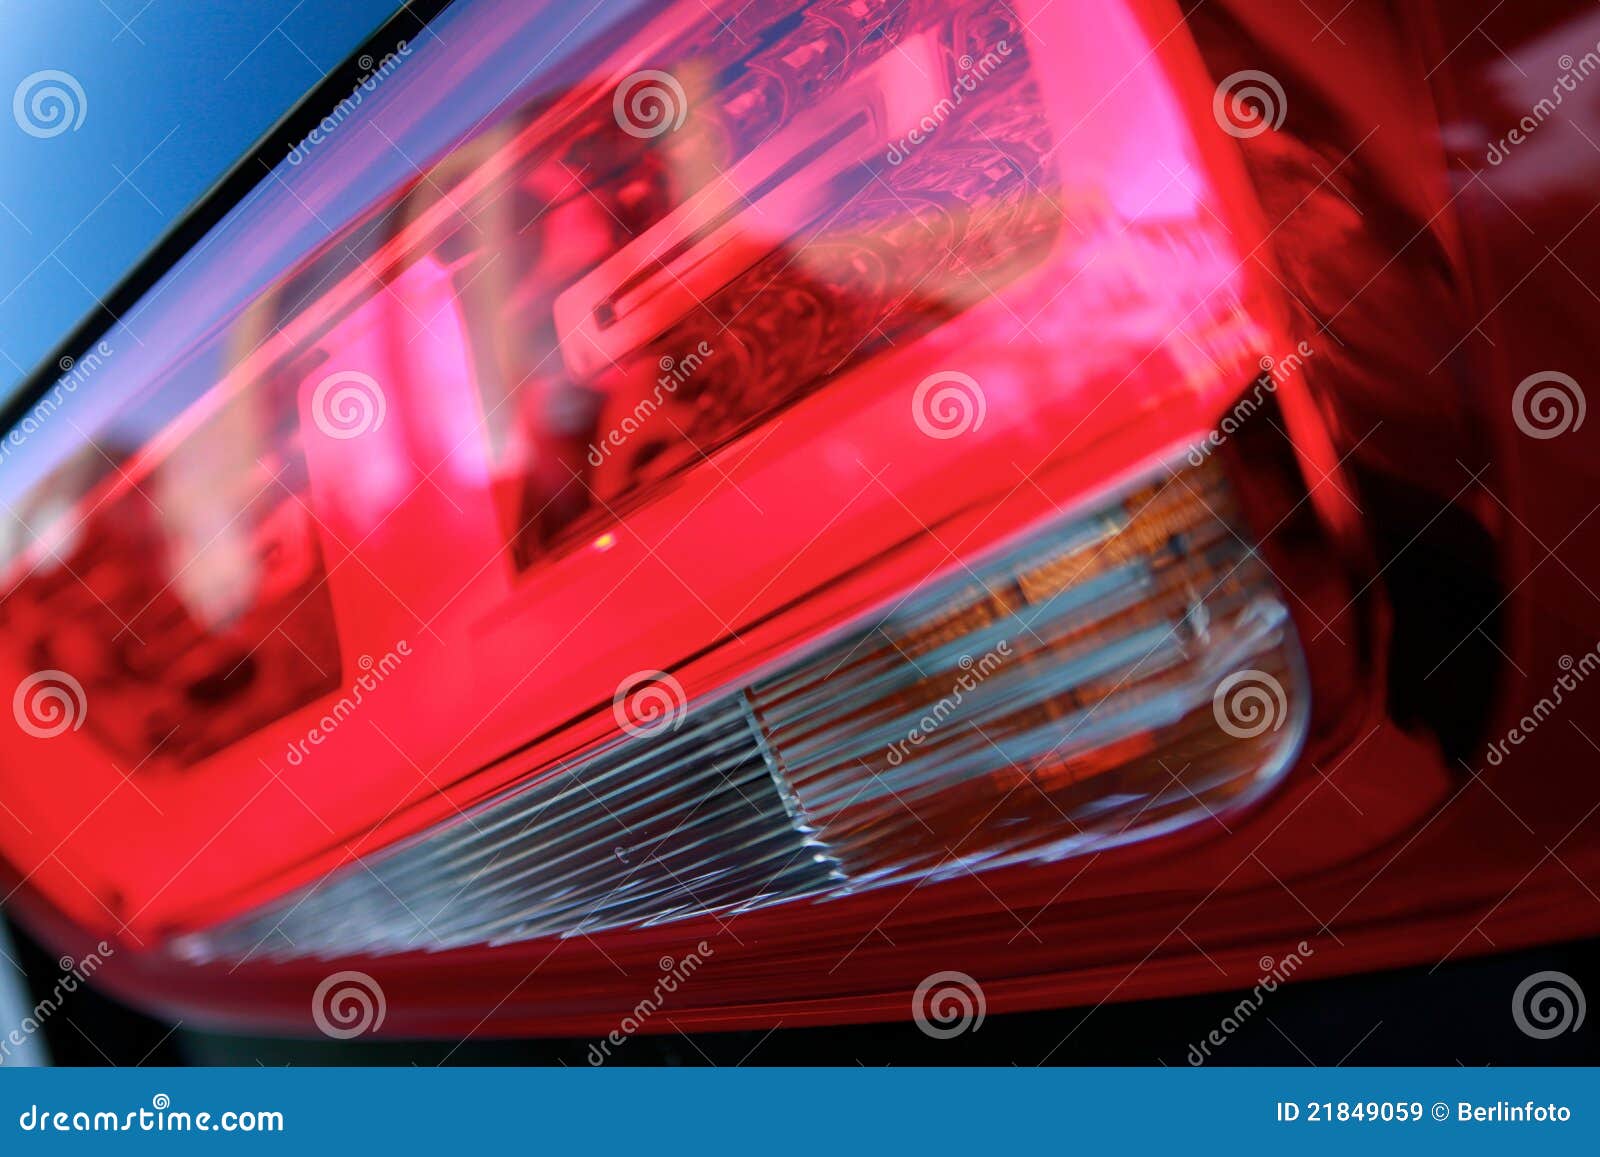 vehicle taillights